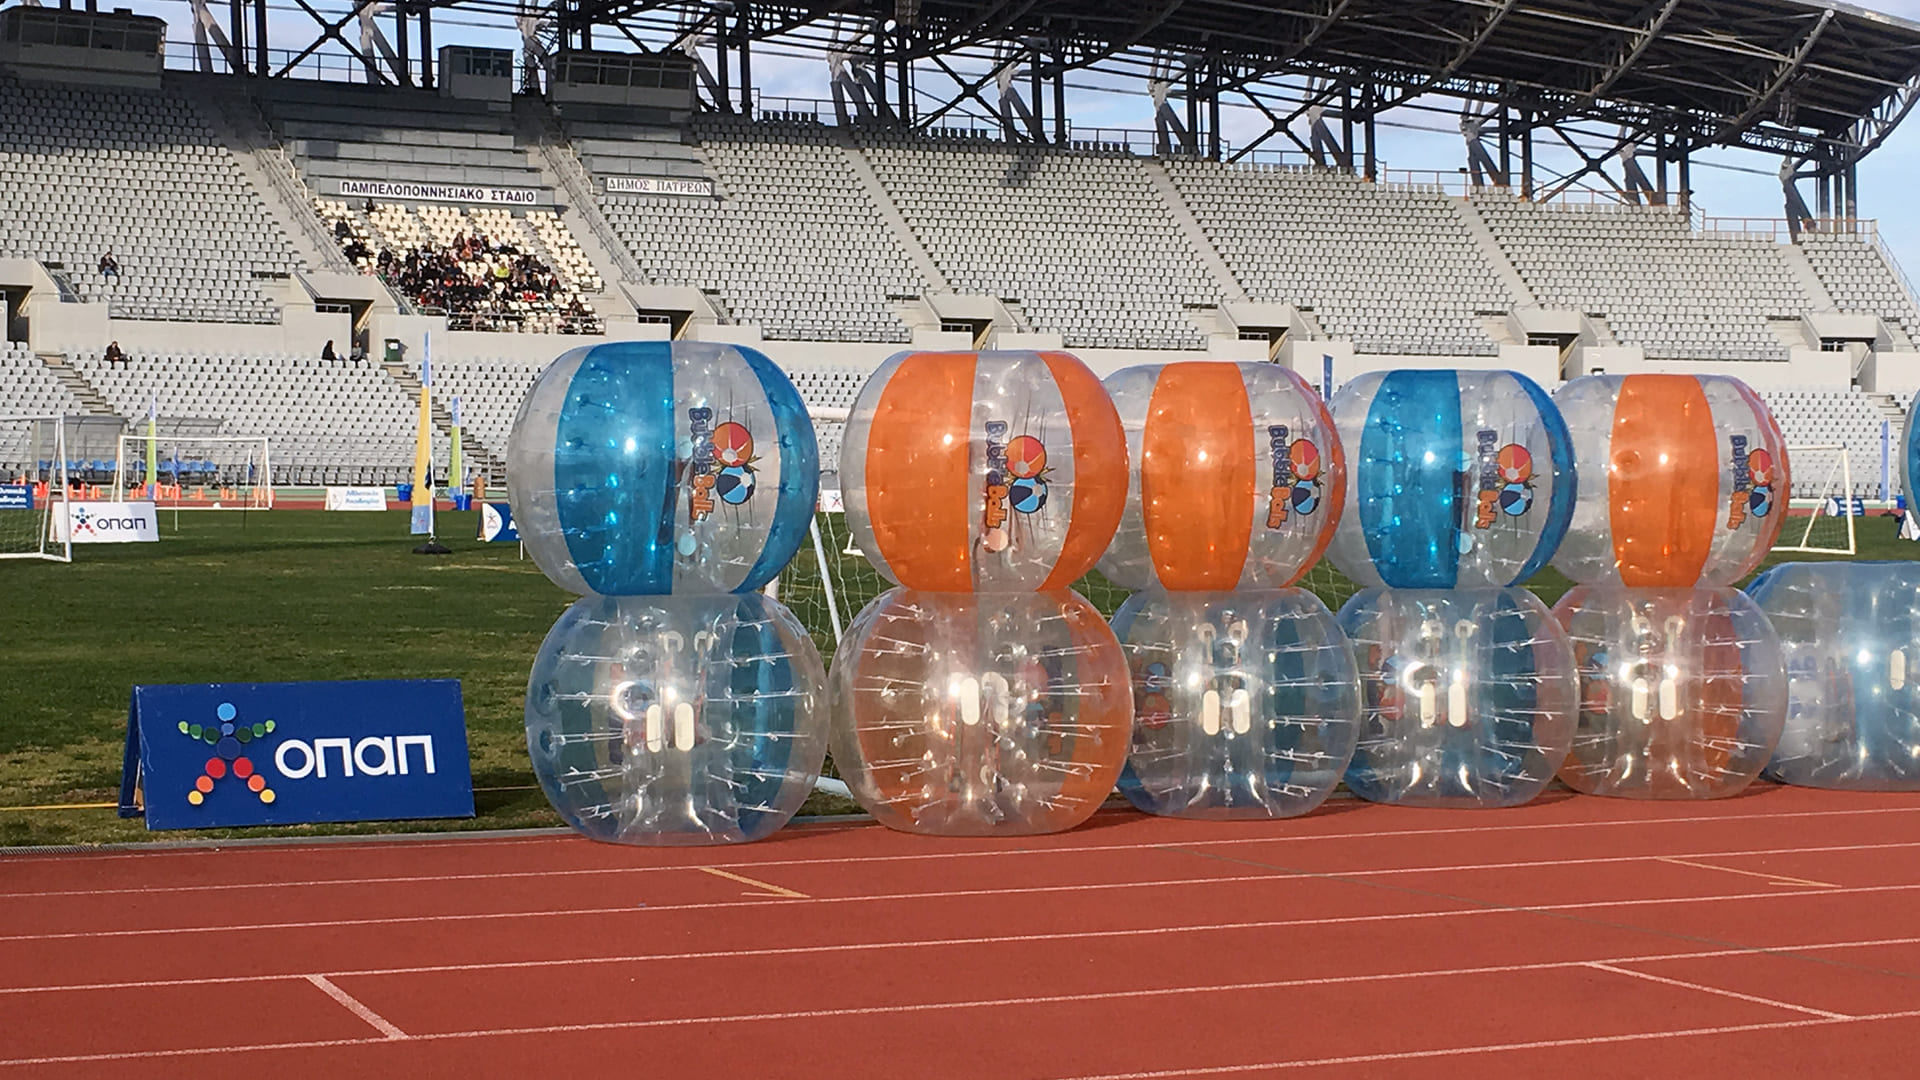 Τα Bubbleballs στο φεστιβάλ των Αθλητικών Ακαδημιών ΟΠΑΠ για το 2019 στο Παμπελοποννησιακό Στάδιο